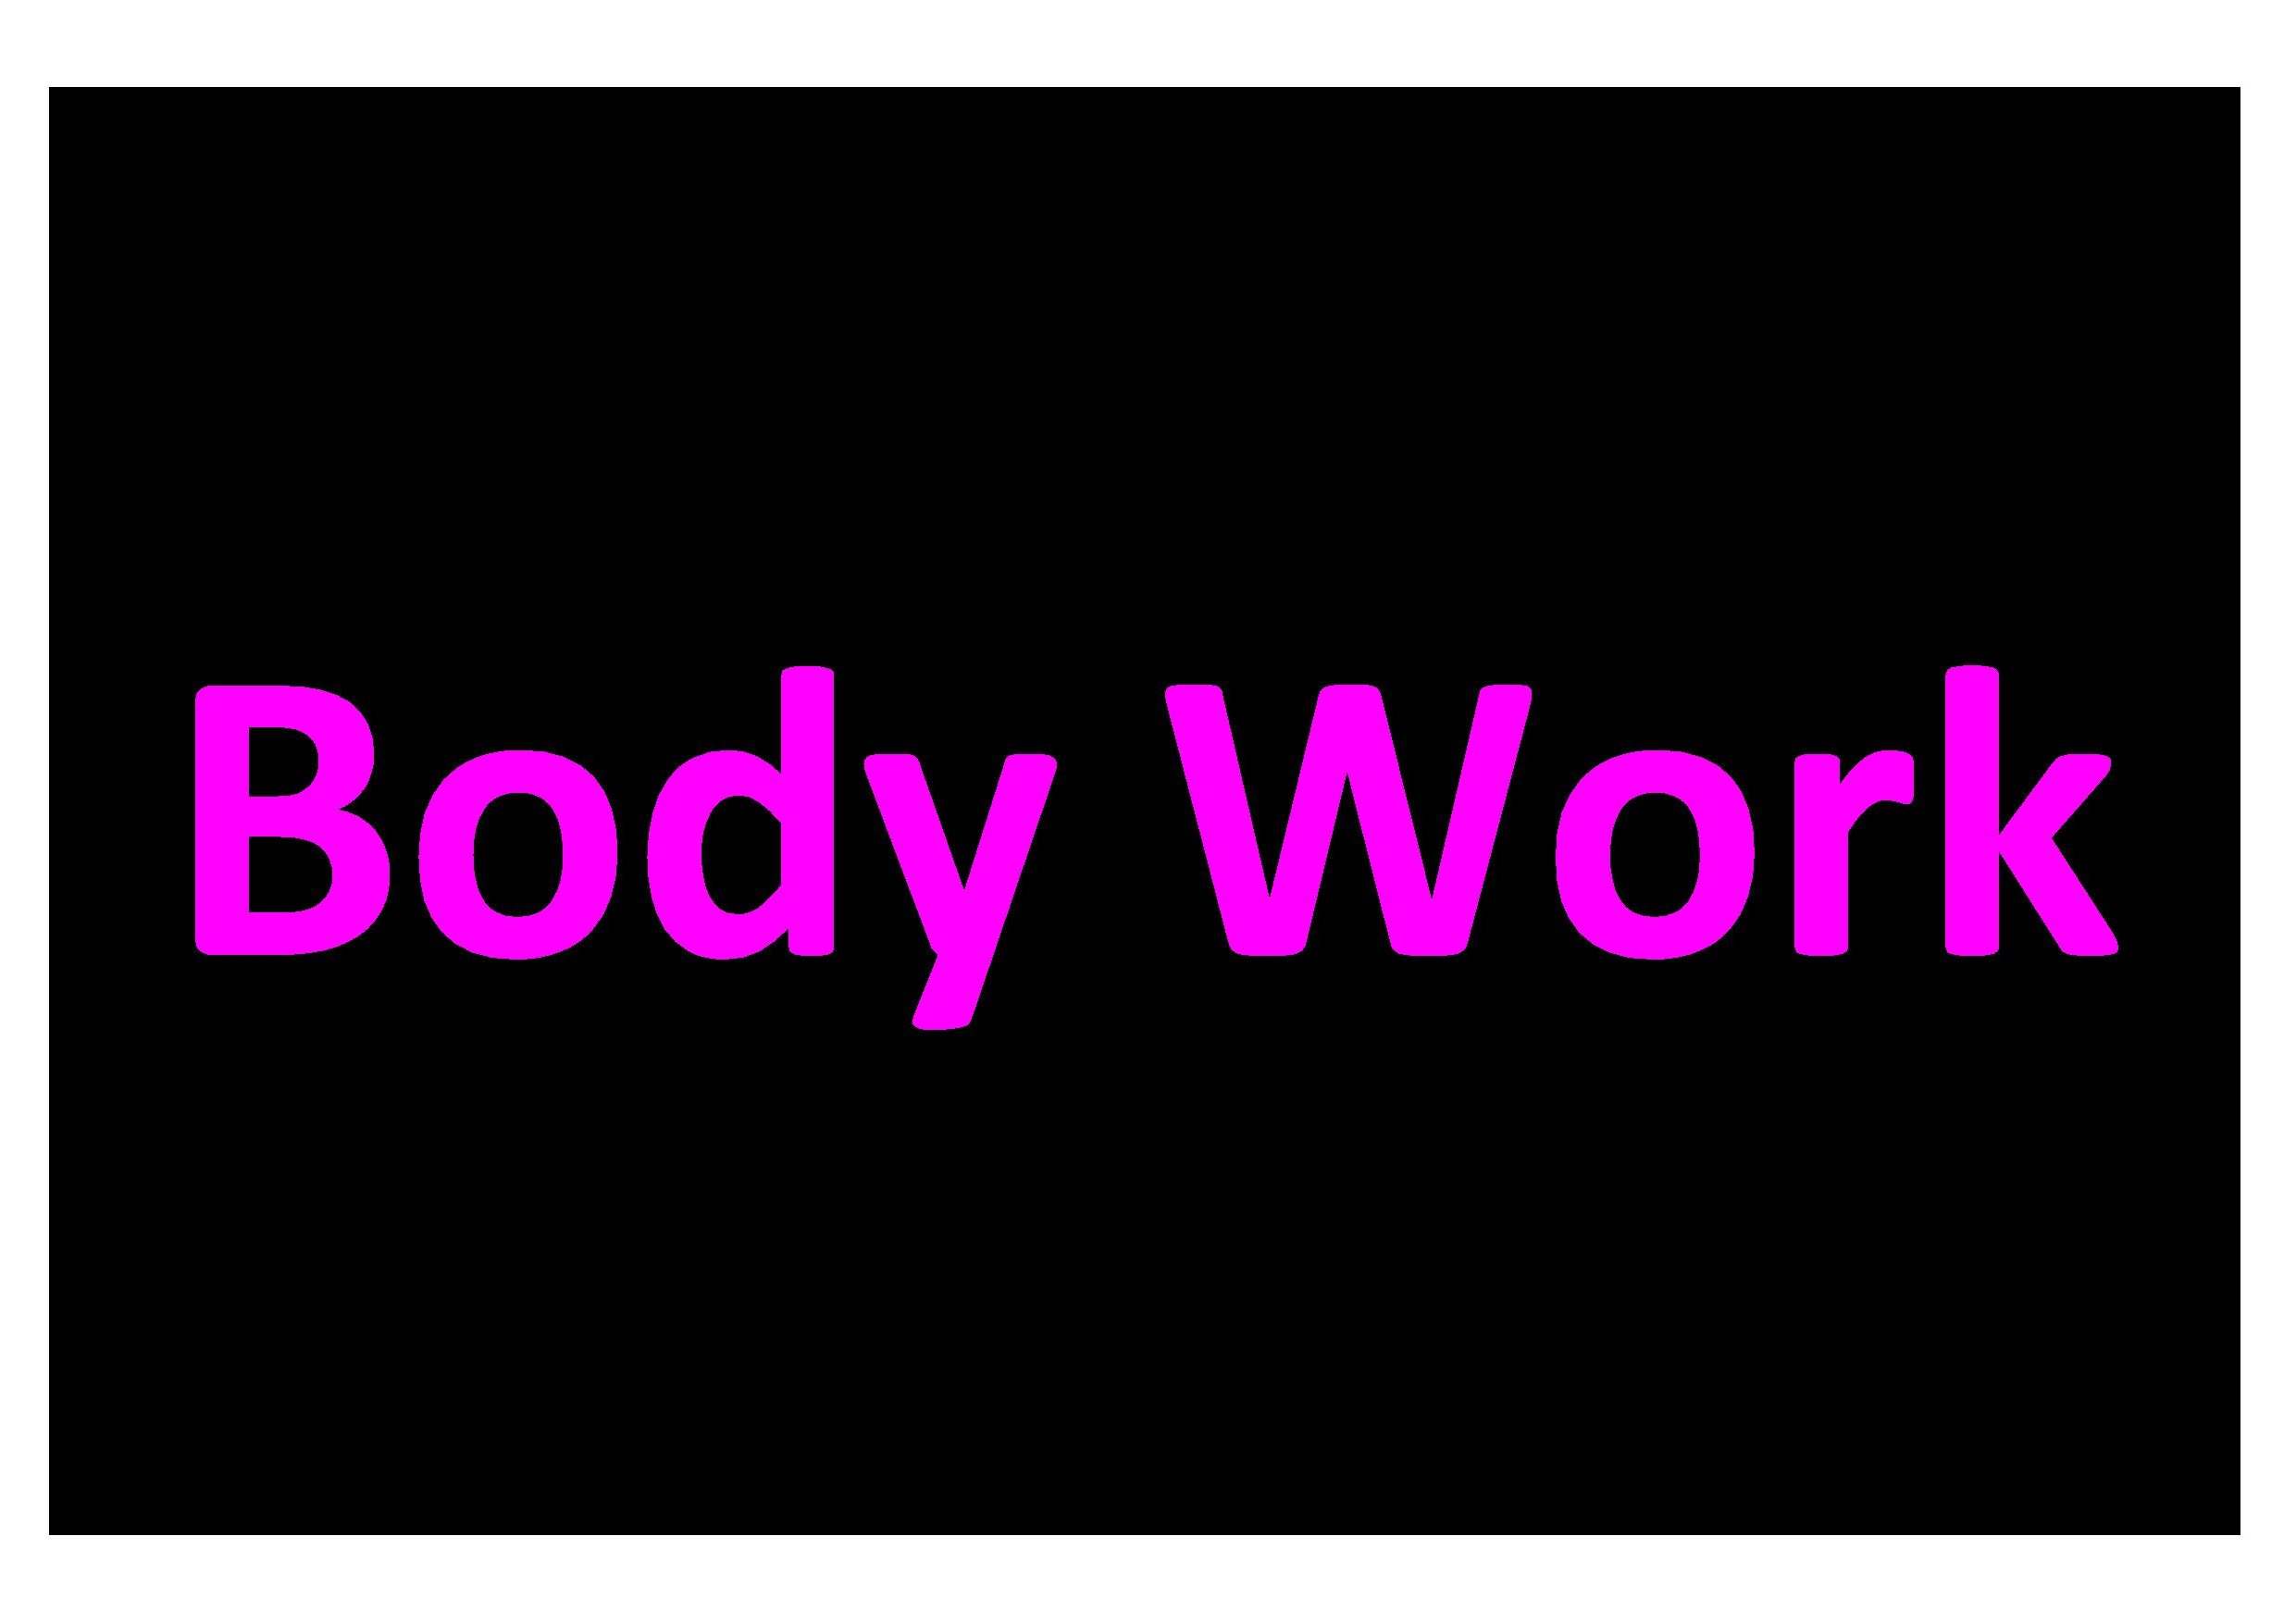 Body Workx